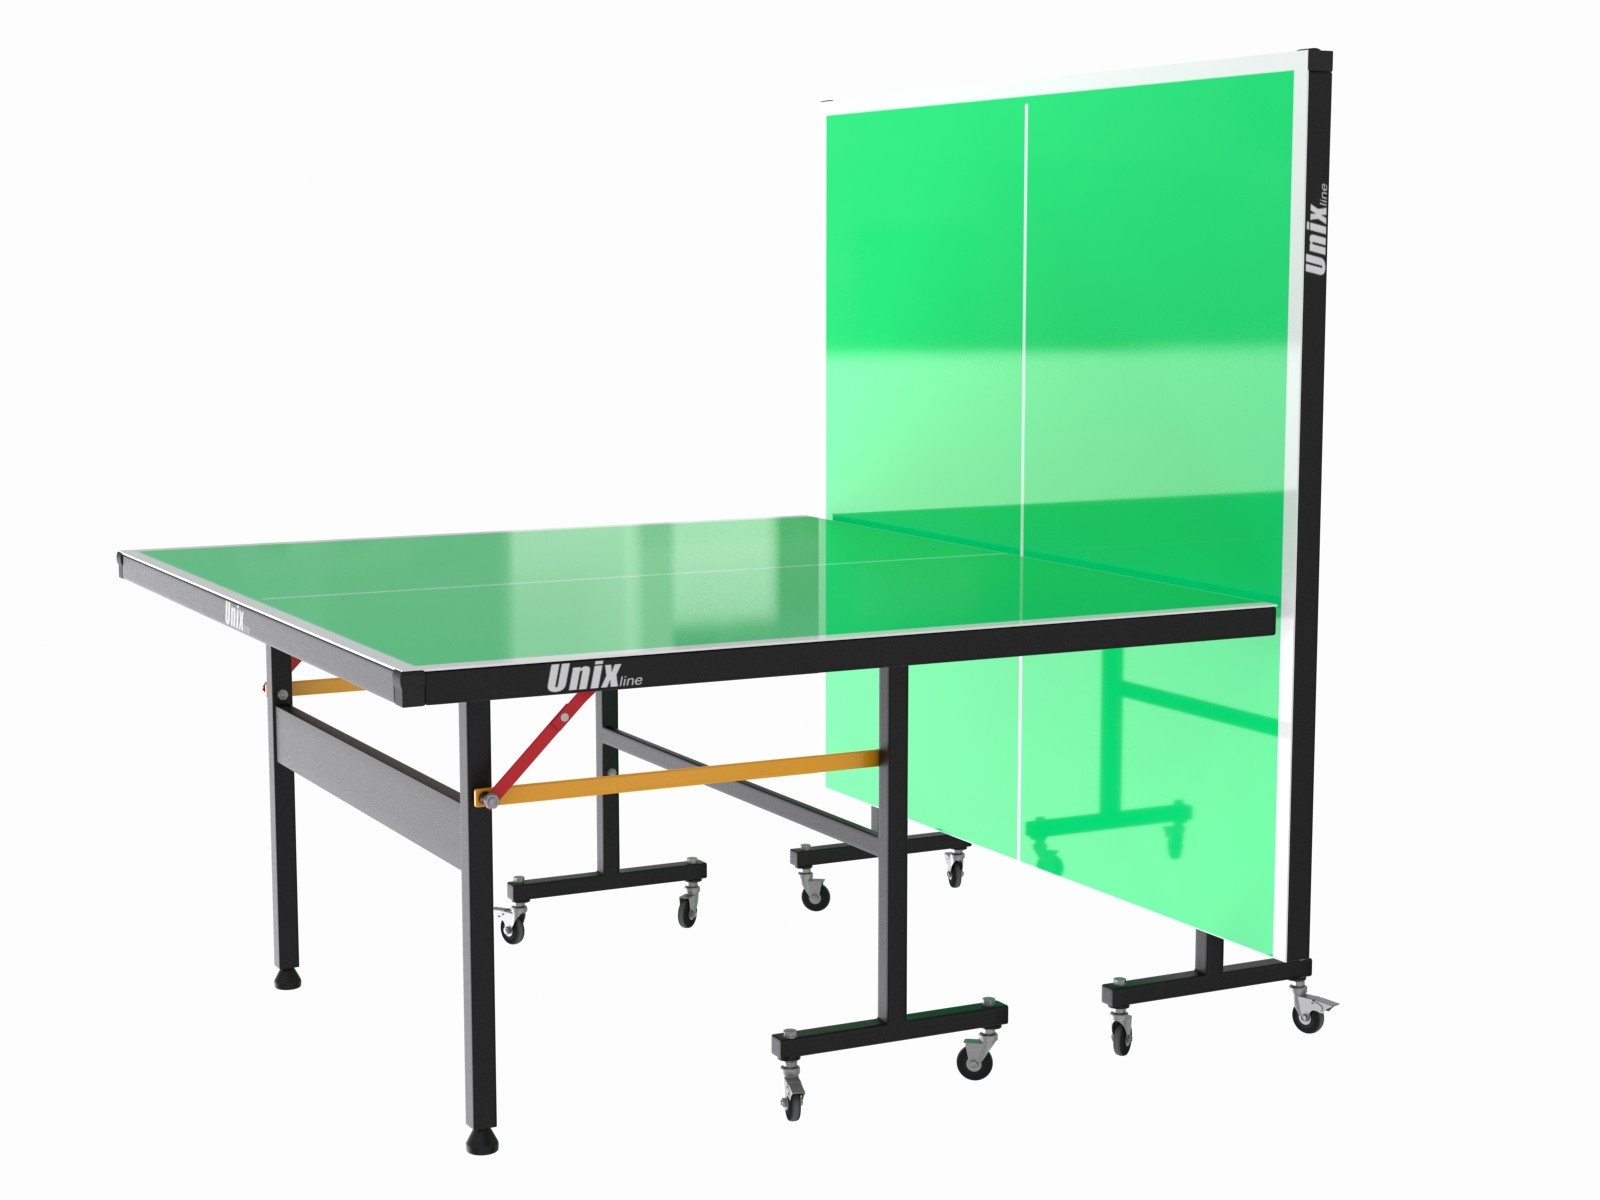 Всепогодный теннисный стол UNIX line outdoor 6mm (green), изображение 7